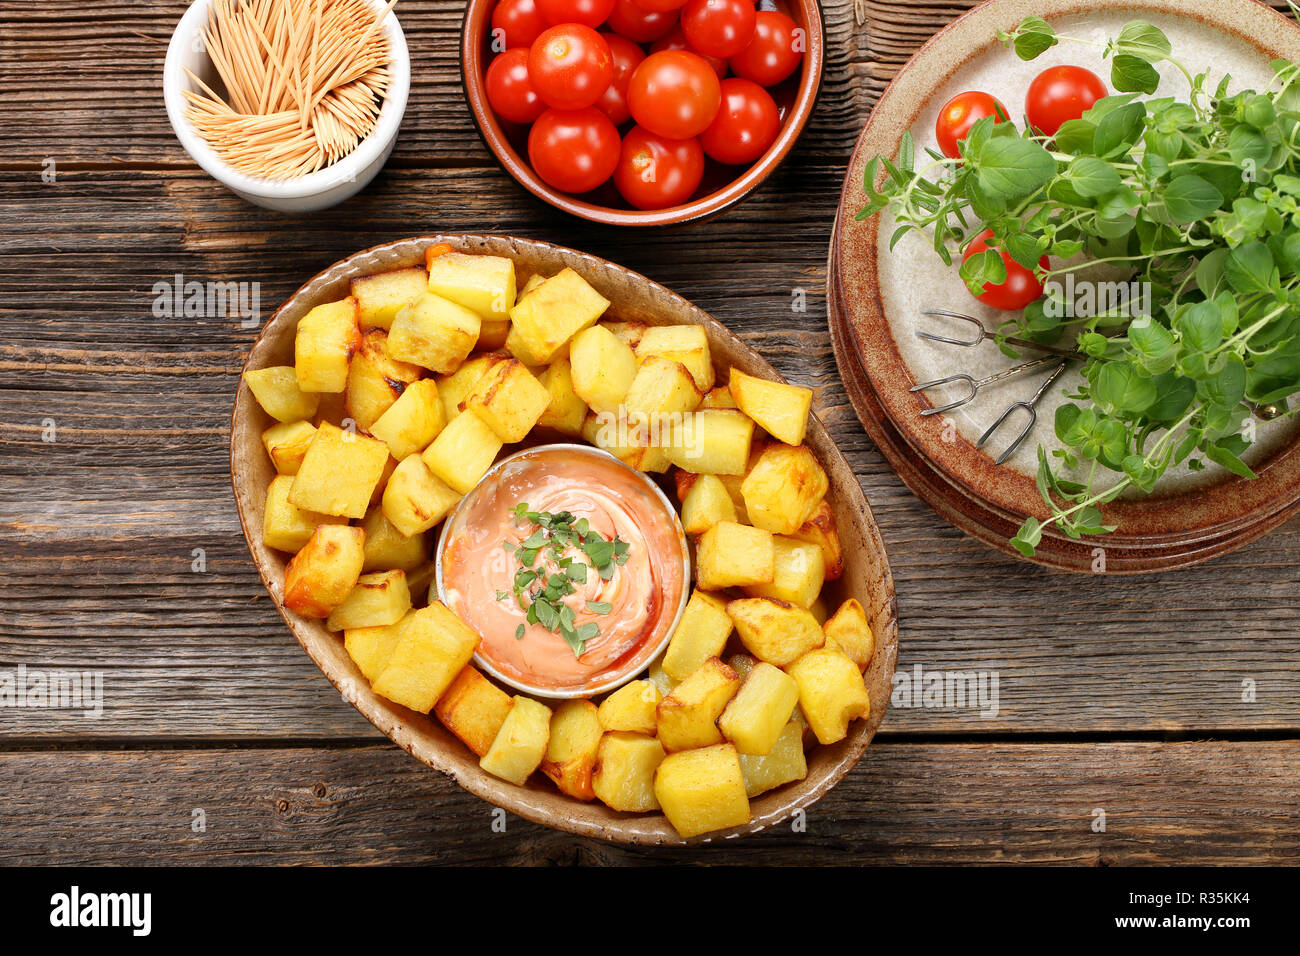 Patatas bravas pommes traditionnel espagnol tapas snack Banque D'Images